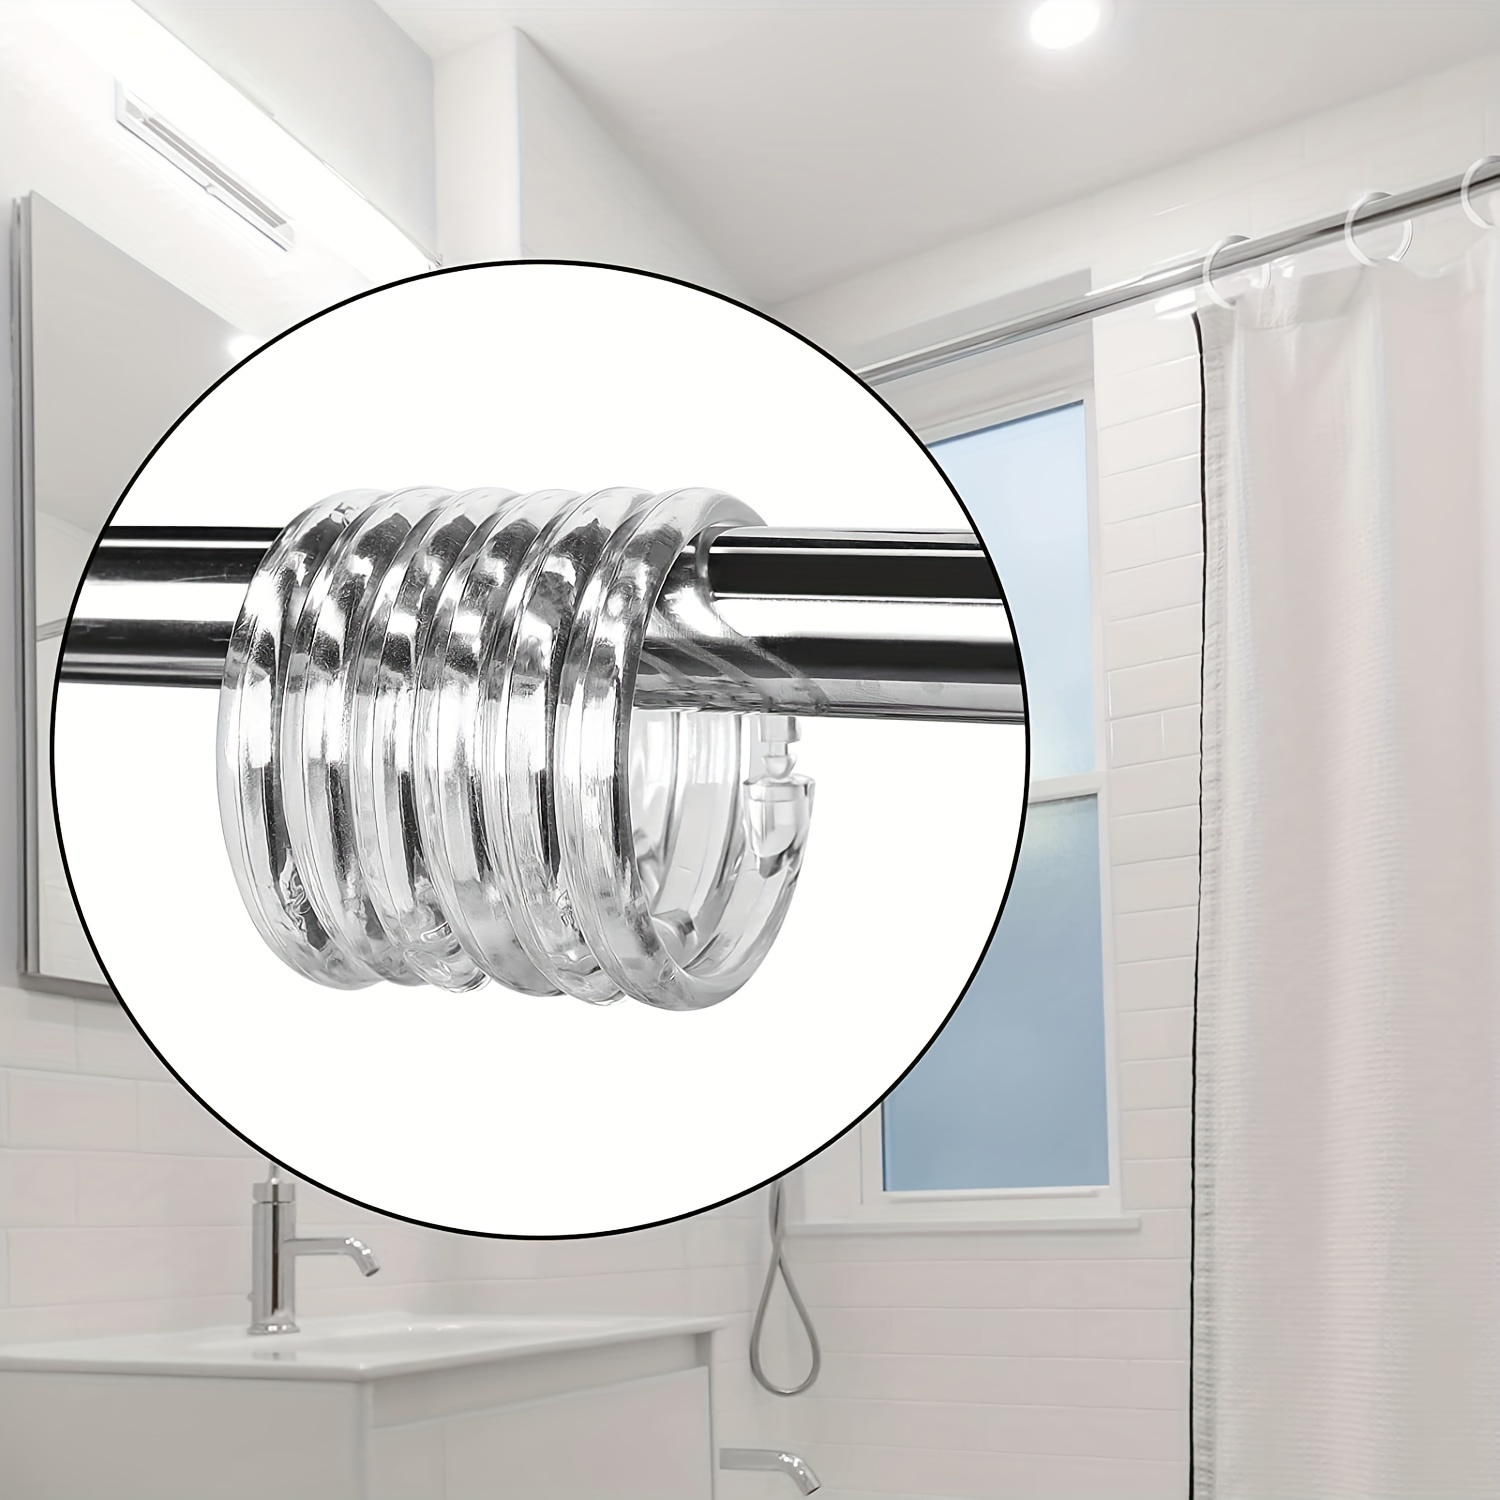  Shower Curtain Rings - White / Plastic / Shower